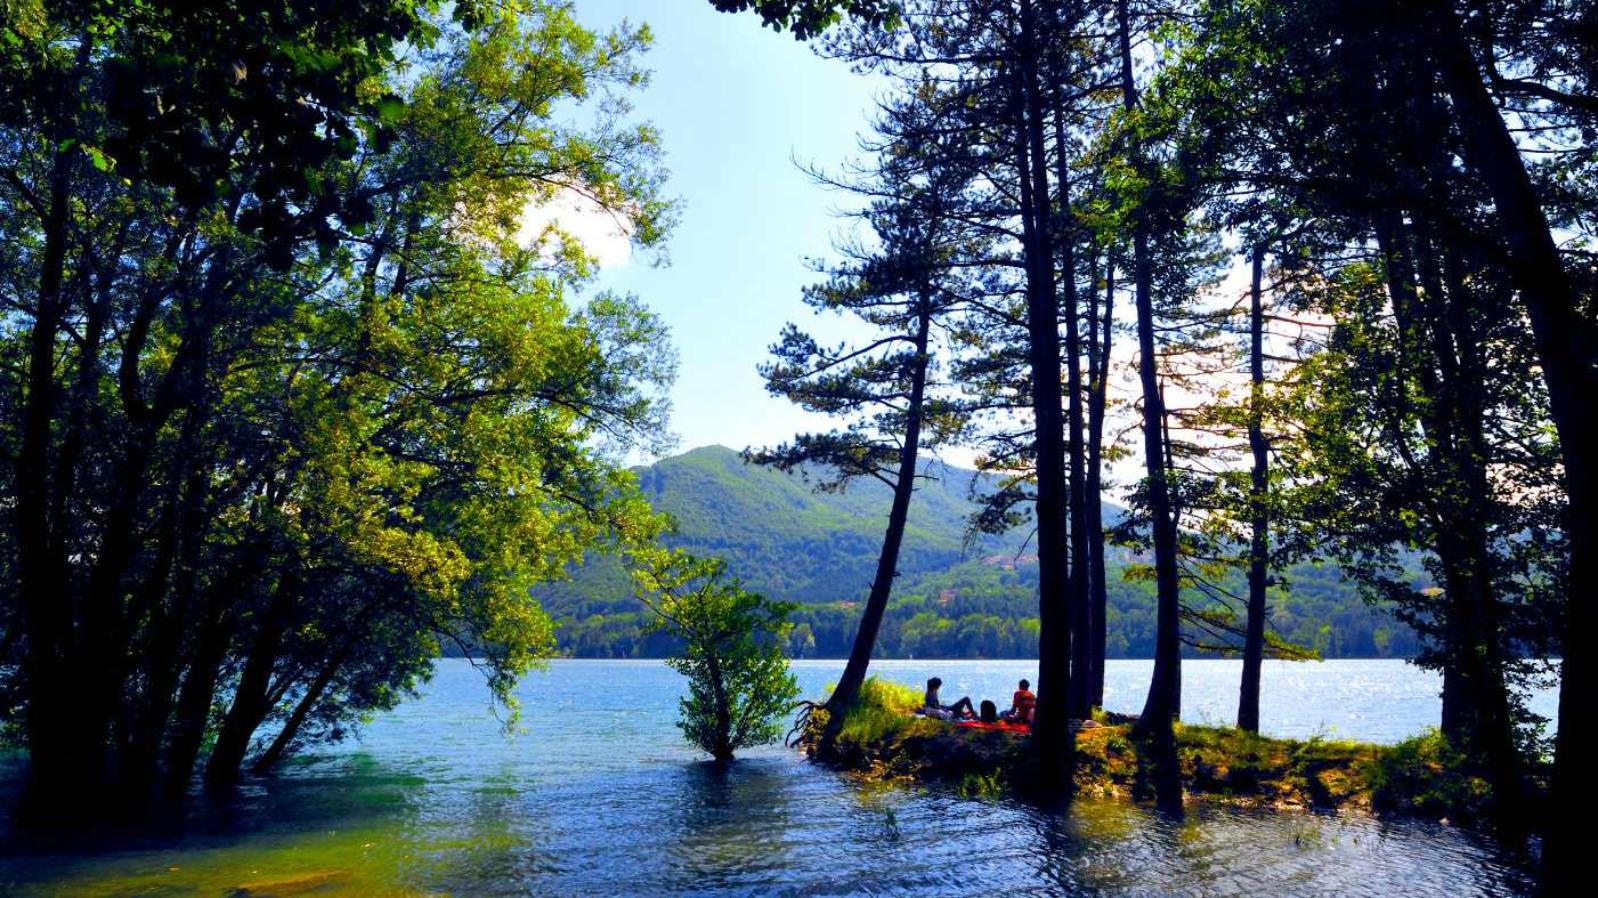 Regional Park of Lake Suviana and Brasimone